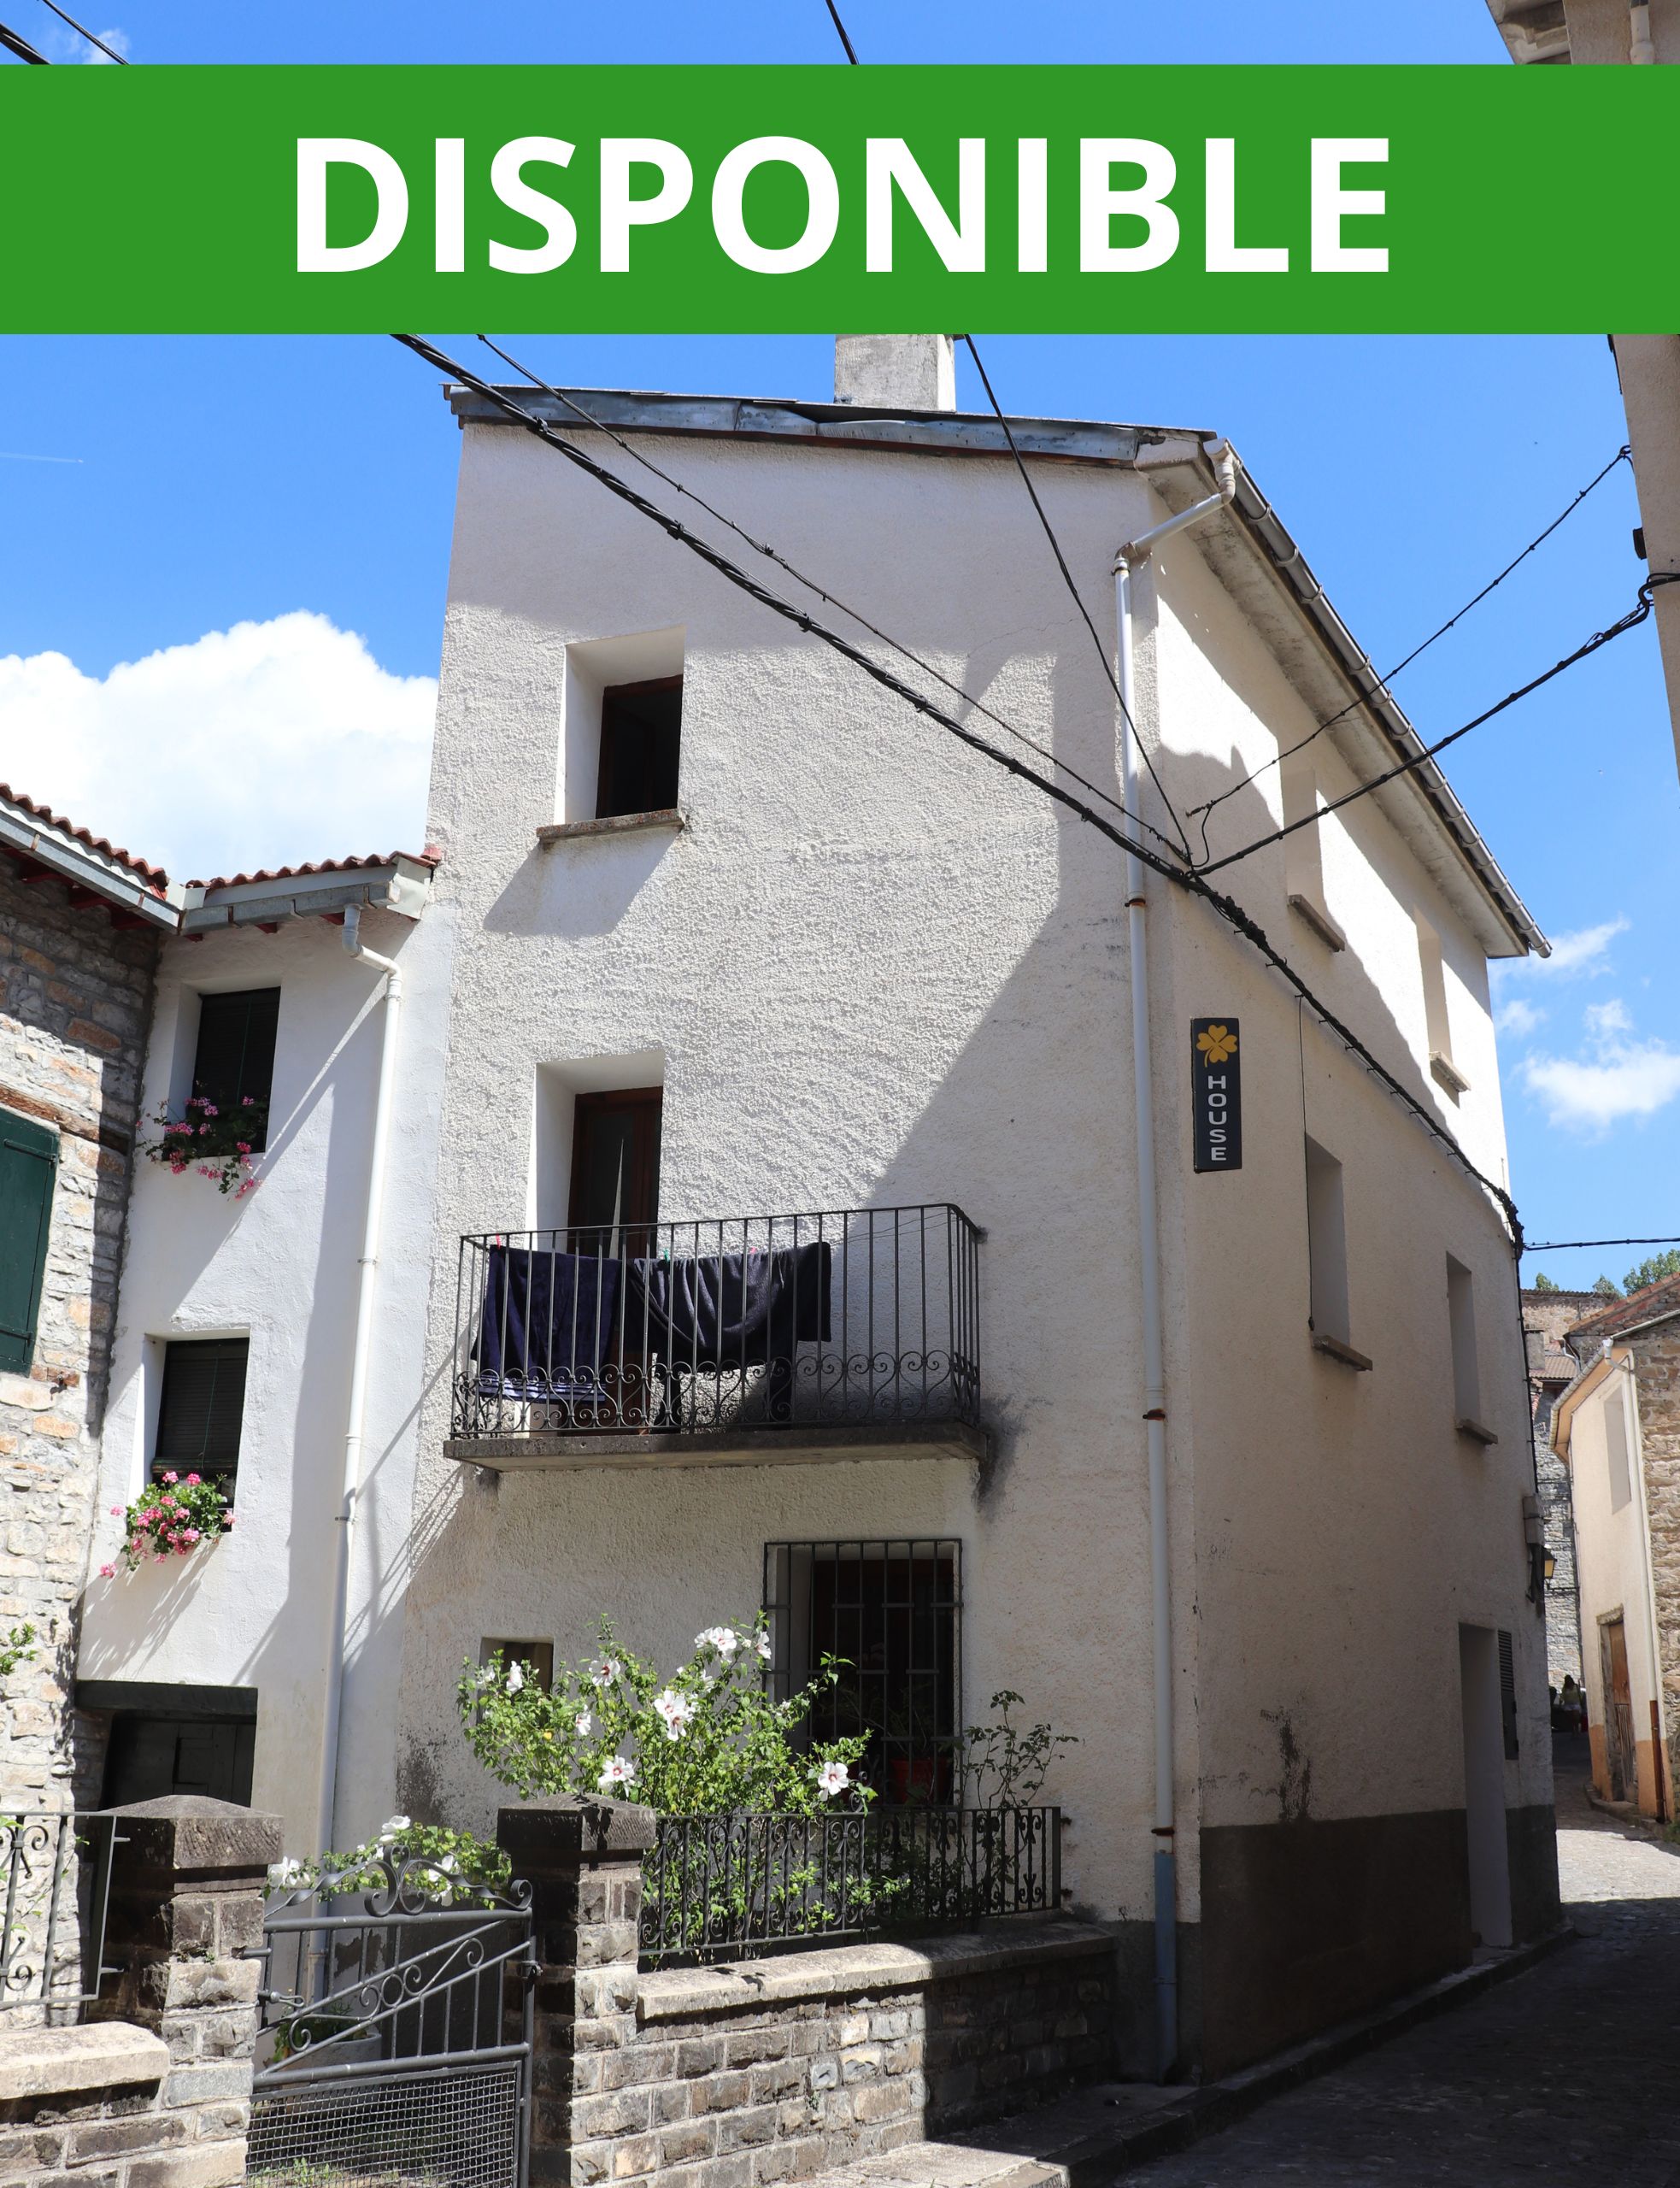 Se trata de un alquiler de locales y viviendas en Biescas (Valle de Tena)